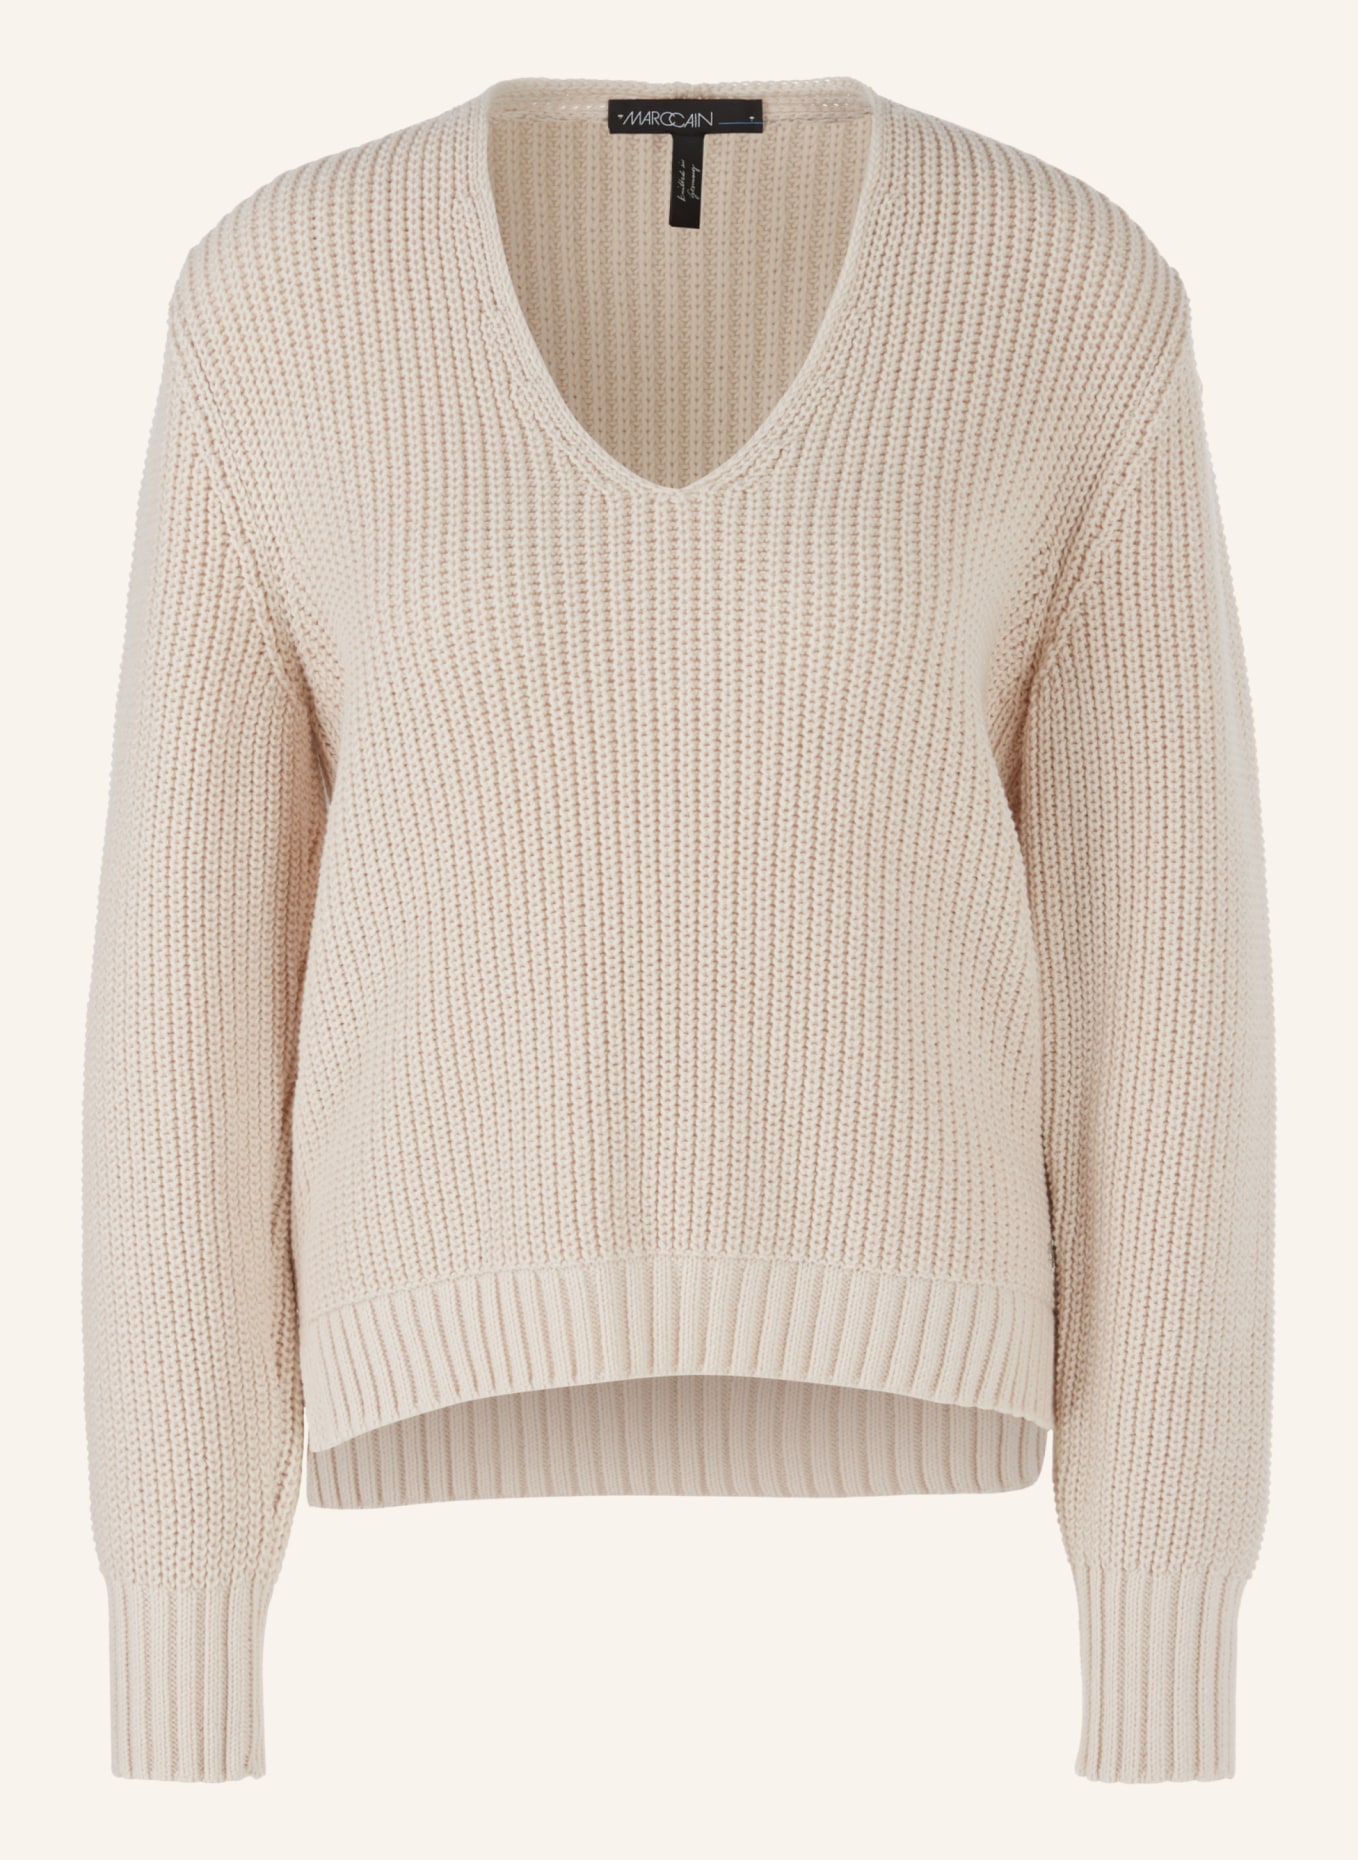 MARC CAIN Pullover, Farbe: CREME (Bild 1)